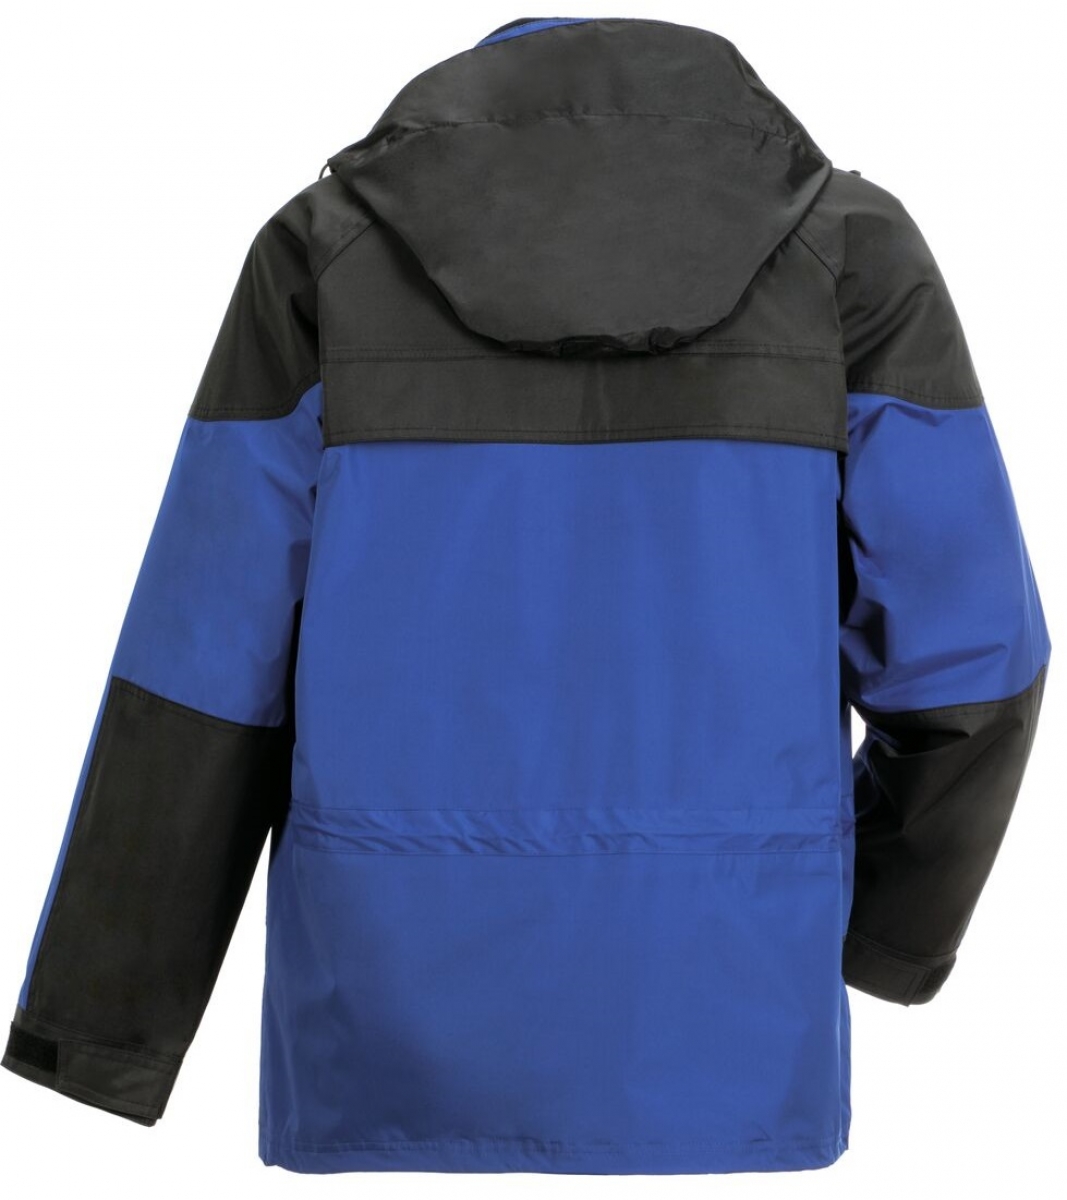 PLANAM-Workwear, Winter-Jacke Twister blau/schwarz